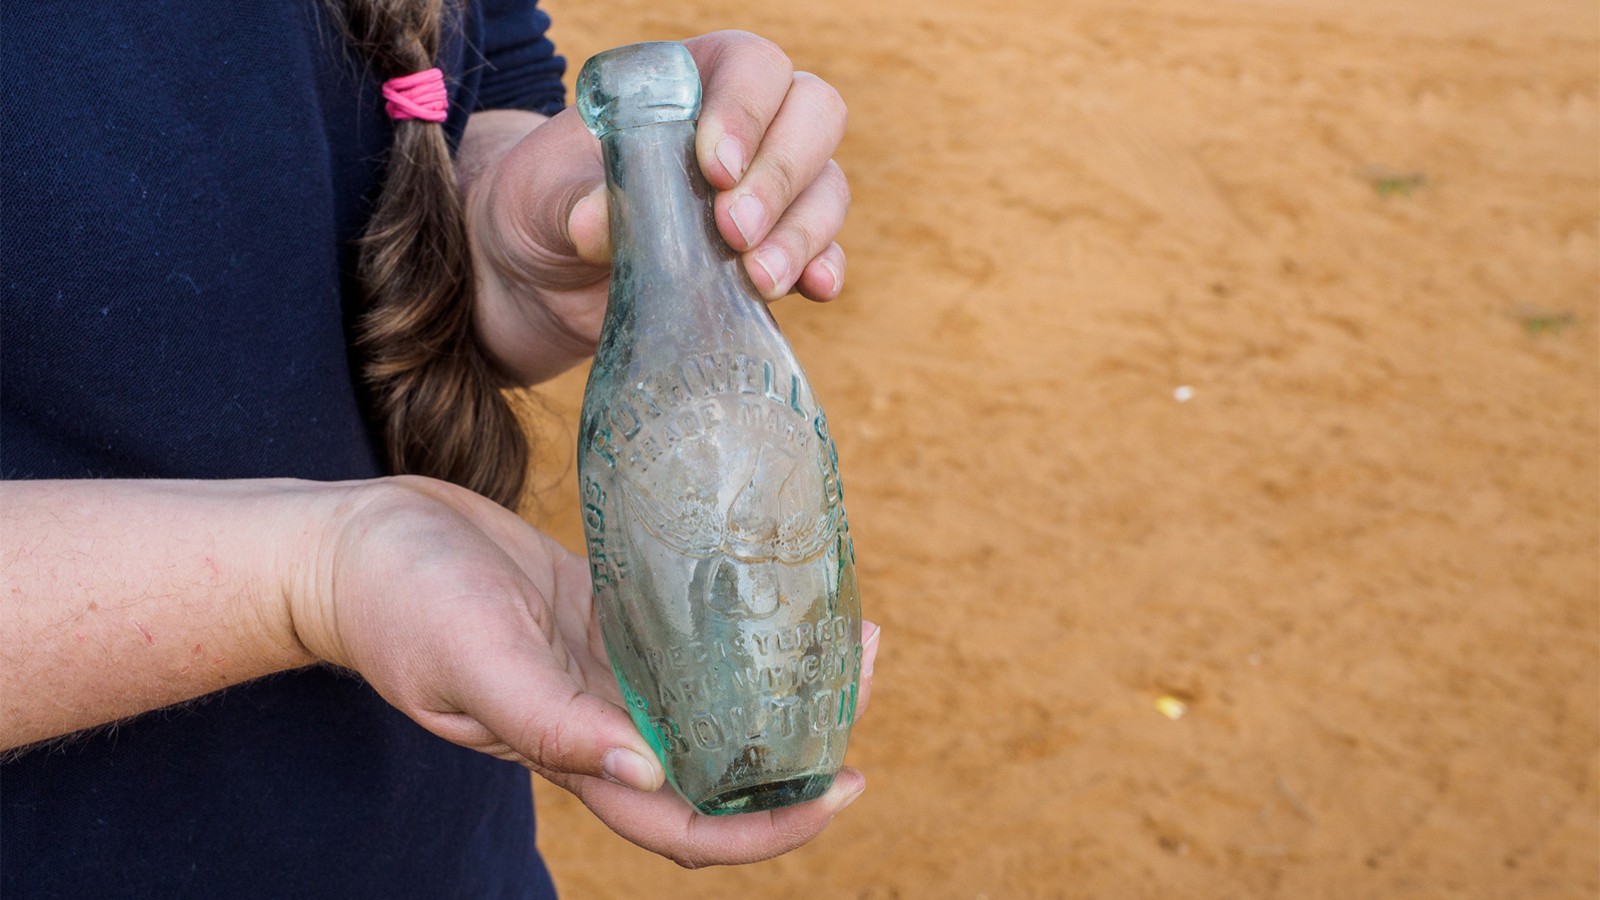 בקבוק סודה עם שם היצרן (צילום אסף פרץ, באדיבות רשות העתיקות)